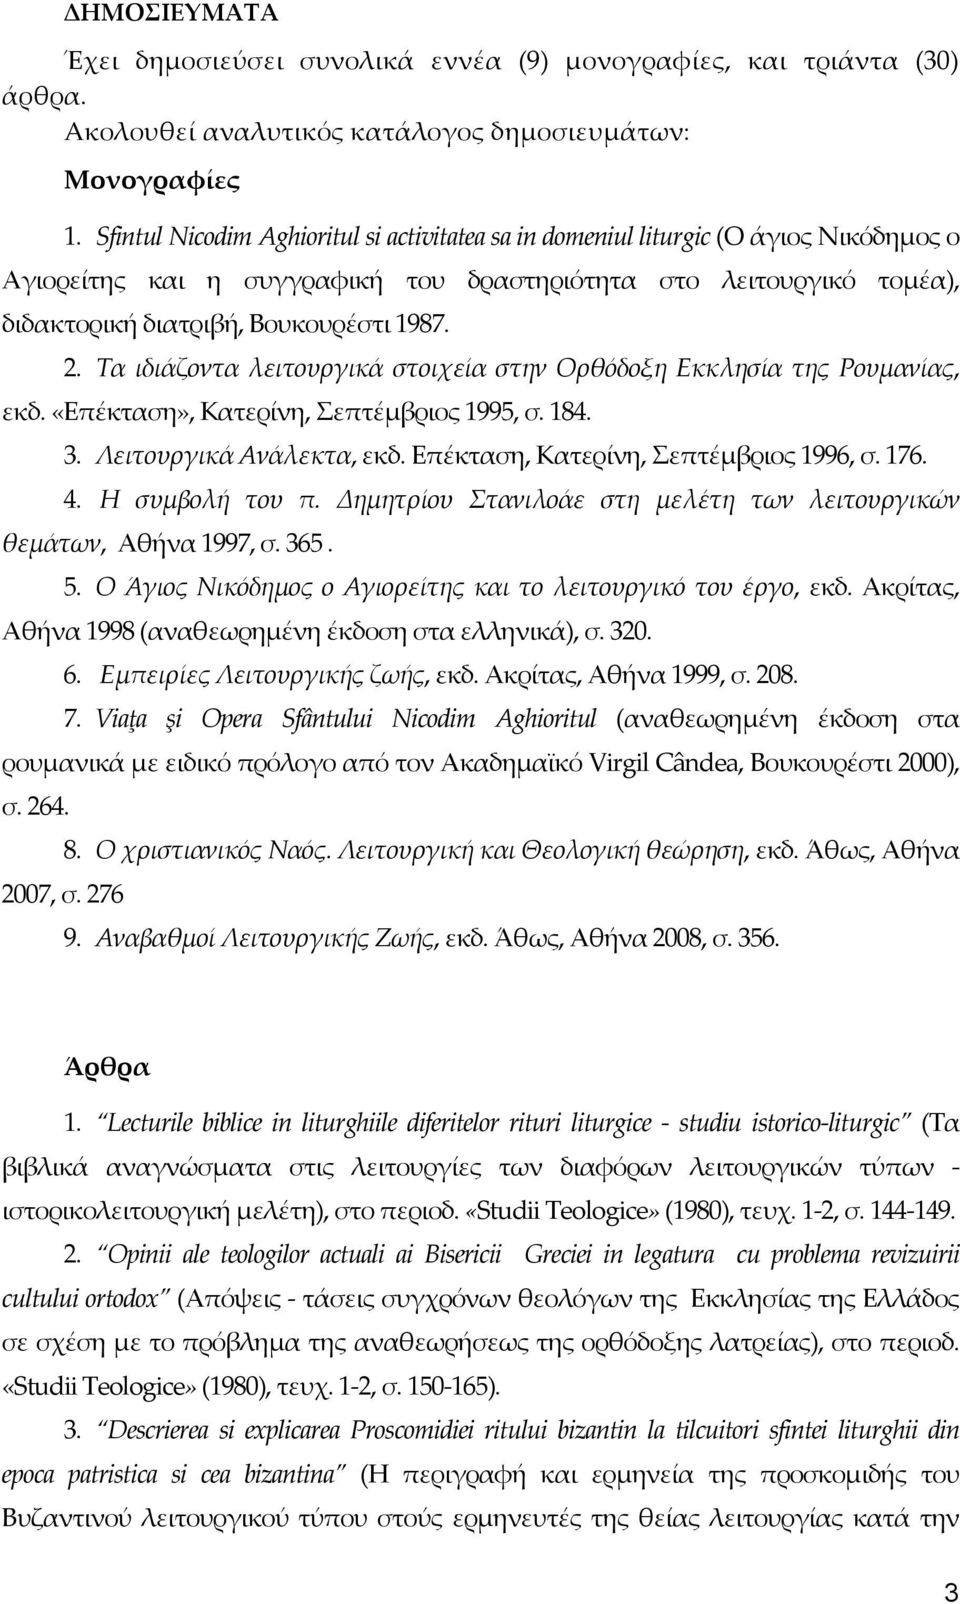 Τα ιδιάζοντα λειτουργικά στοιχεία στην Ορθόδοξη Εκκλησία της Ρουμανίας, εκδ. «Επέκταση», Κατερίνη, Σεπτέμβριος 1995, σ. 184. 3. Λειτουργικά Ανάλεκτα, εκδ. Επέκταση, Κατερίνη, Σεπτέμβριος 1996, σ. 176.